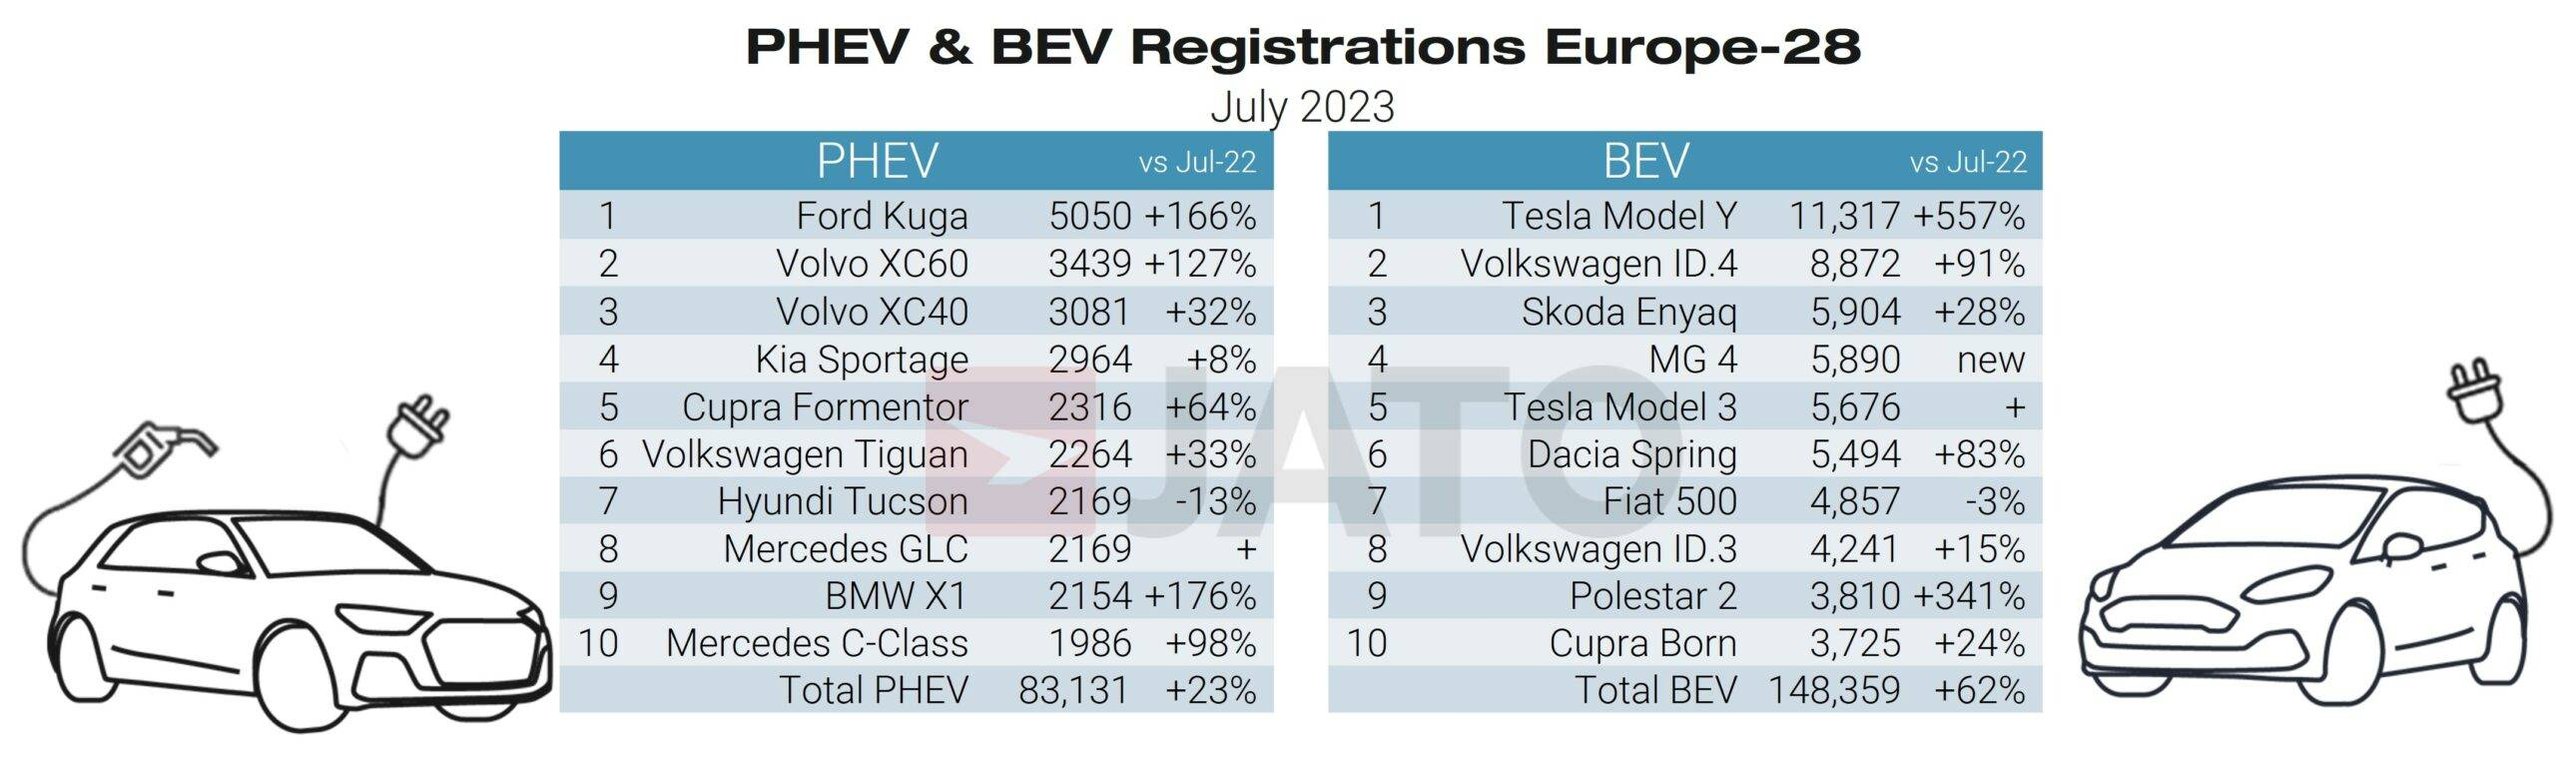 PHEV & BEV Registration Europe July 2023